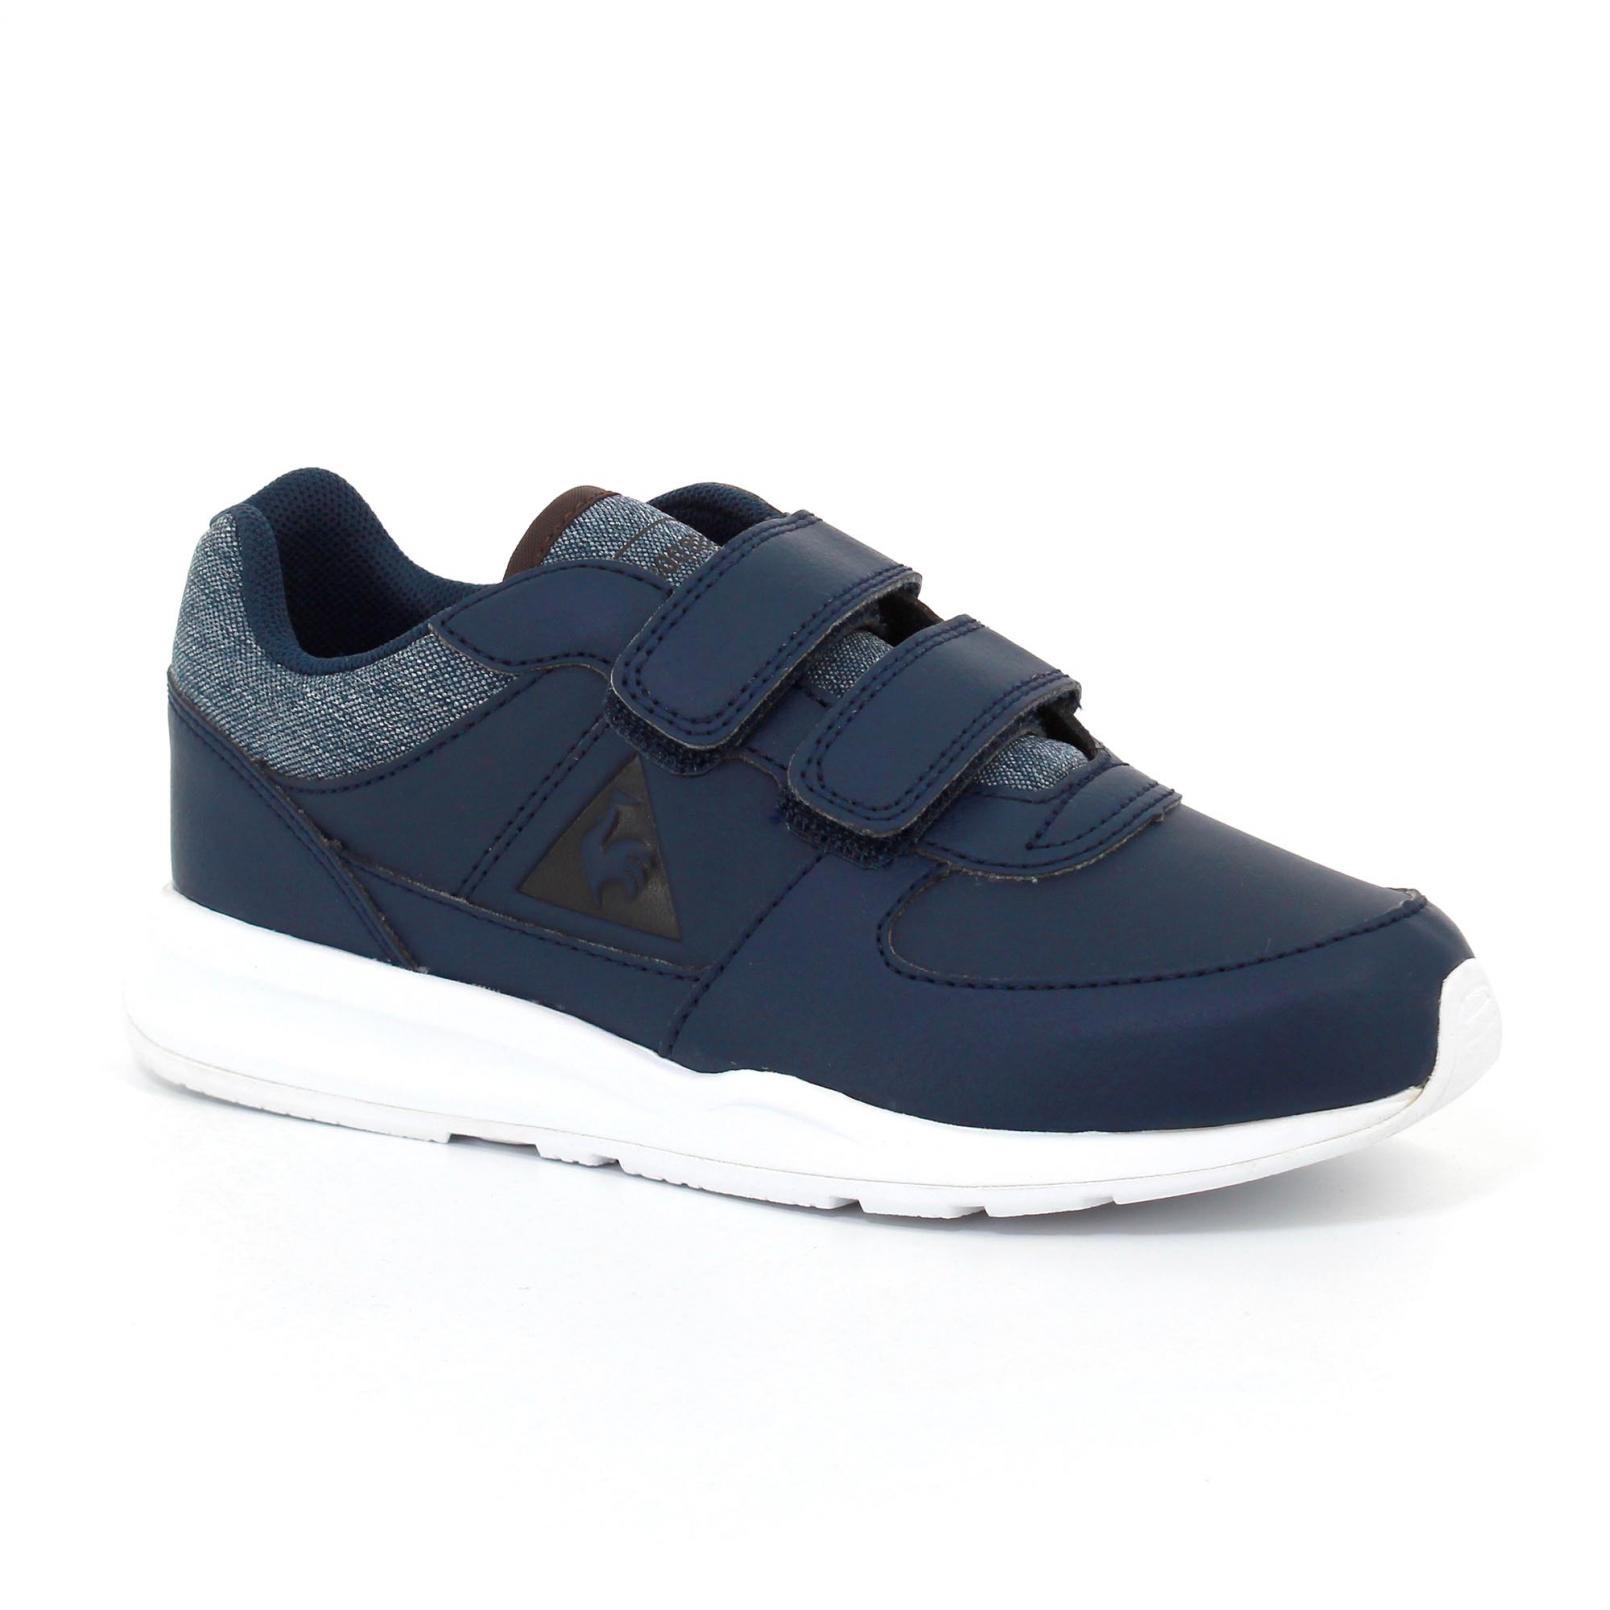 Shoes – Le Coq Sportif Bts R600 Ps S Lea/2 Tones Blue/Brown